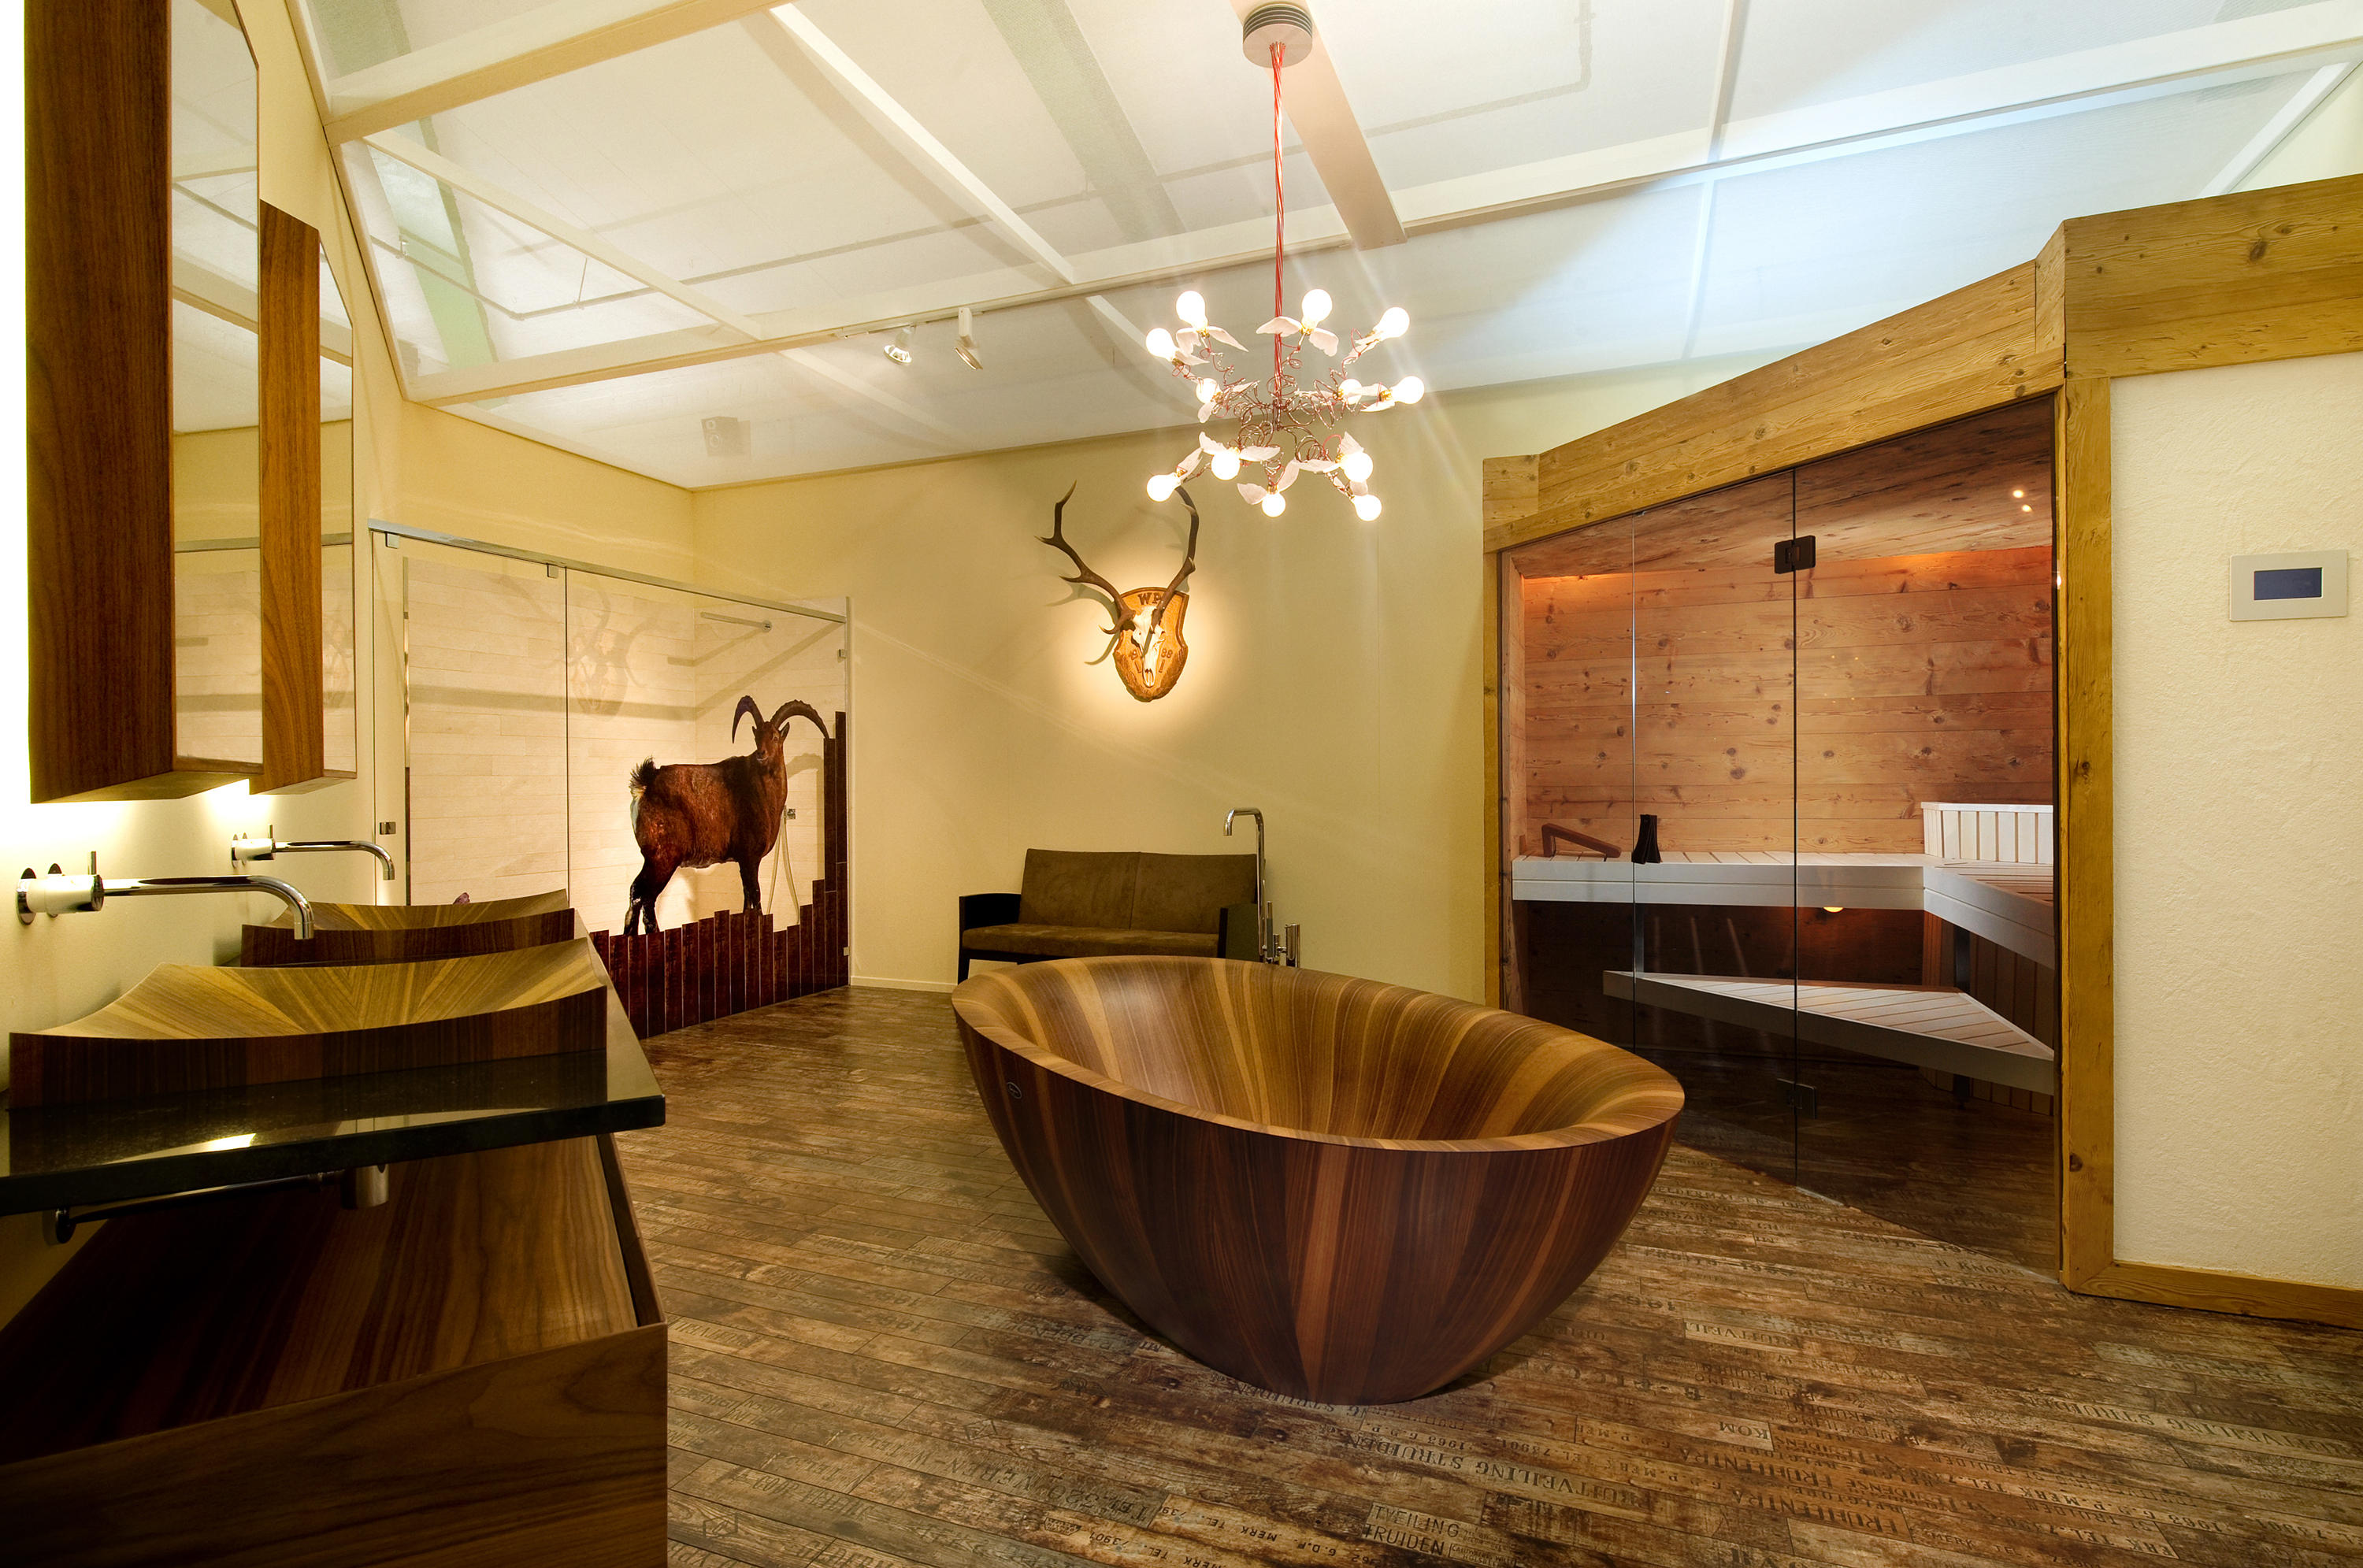 Изготовление ванных комнат. Ванна Alegna Laguna Spa дерево. Деревянная ванна. Деревянная ванна в интерьере. Дизайнерские ванны из дерева.